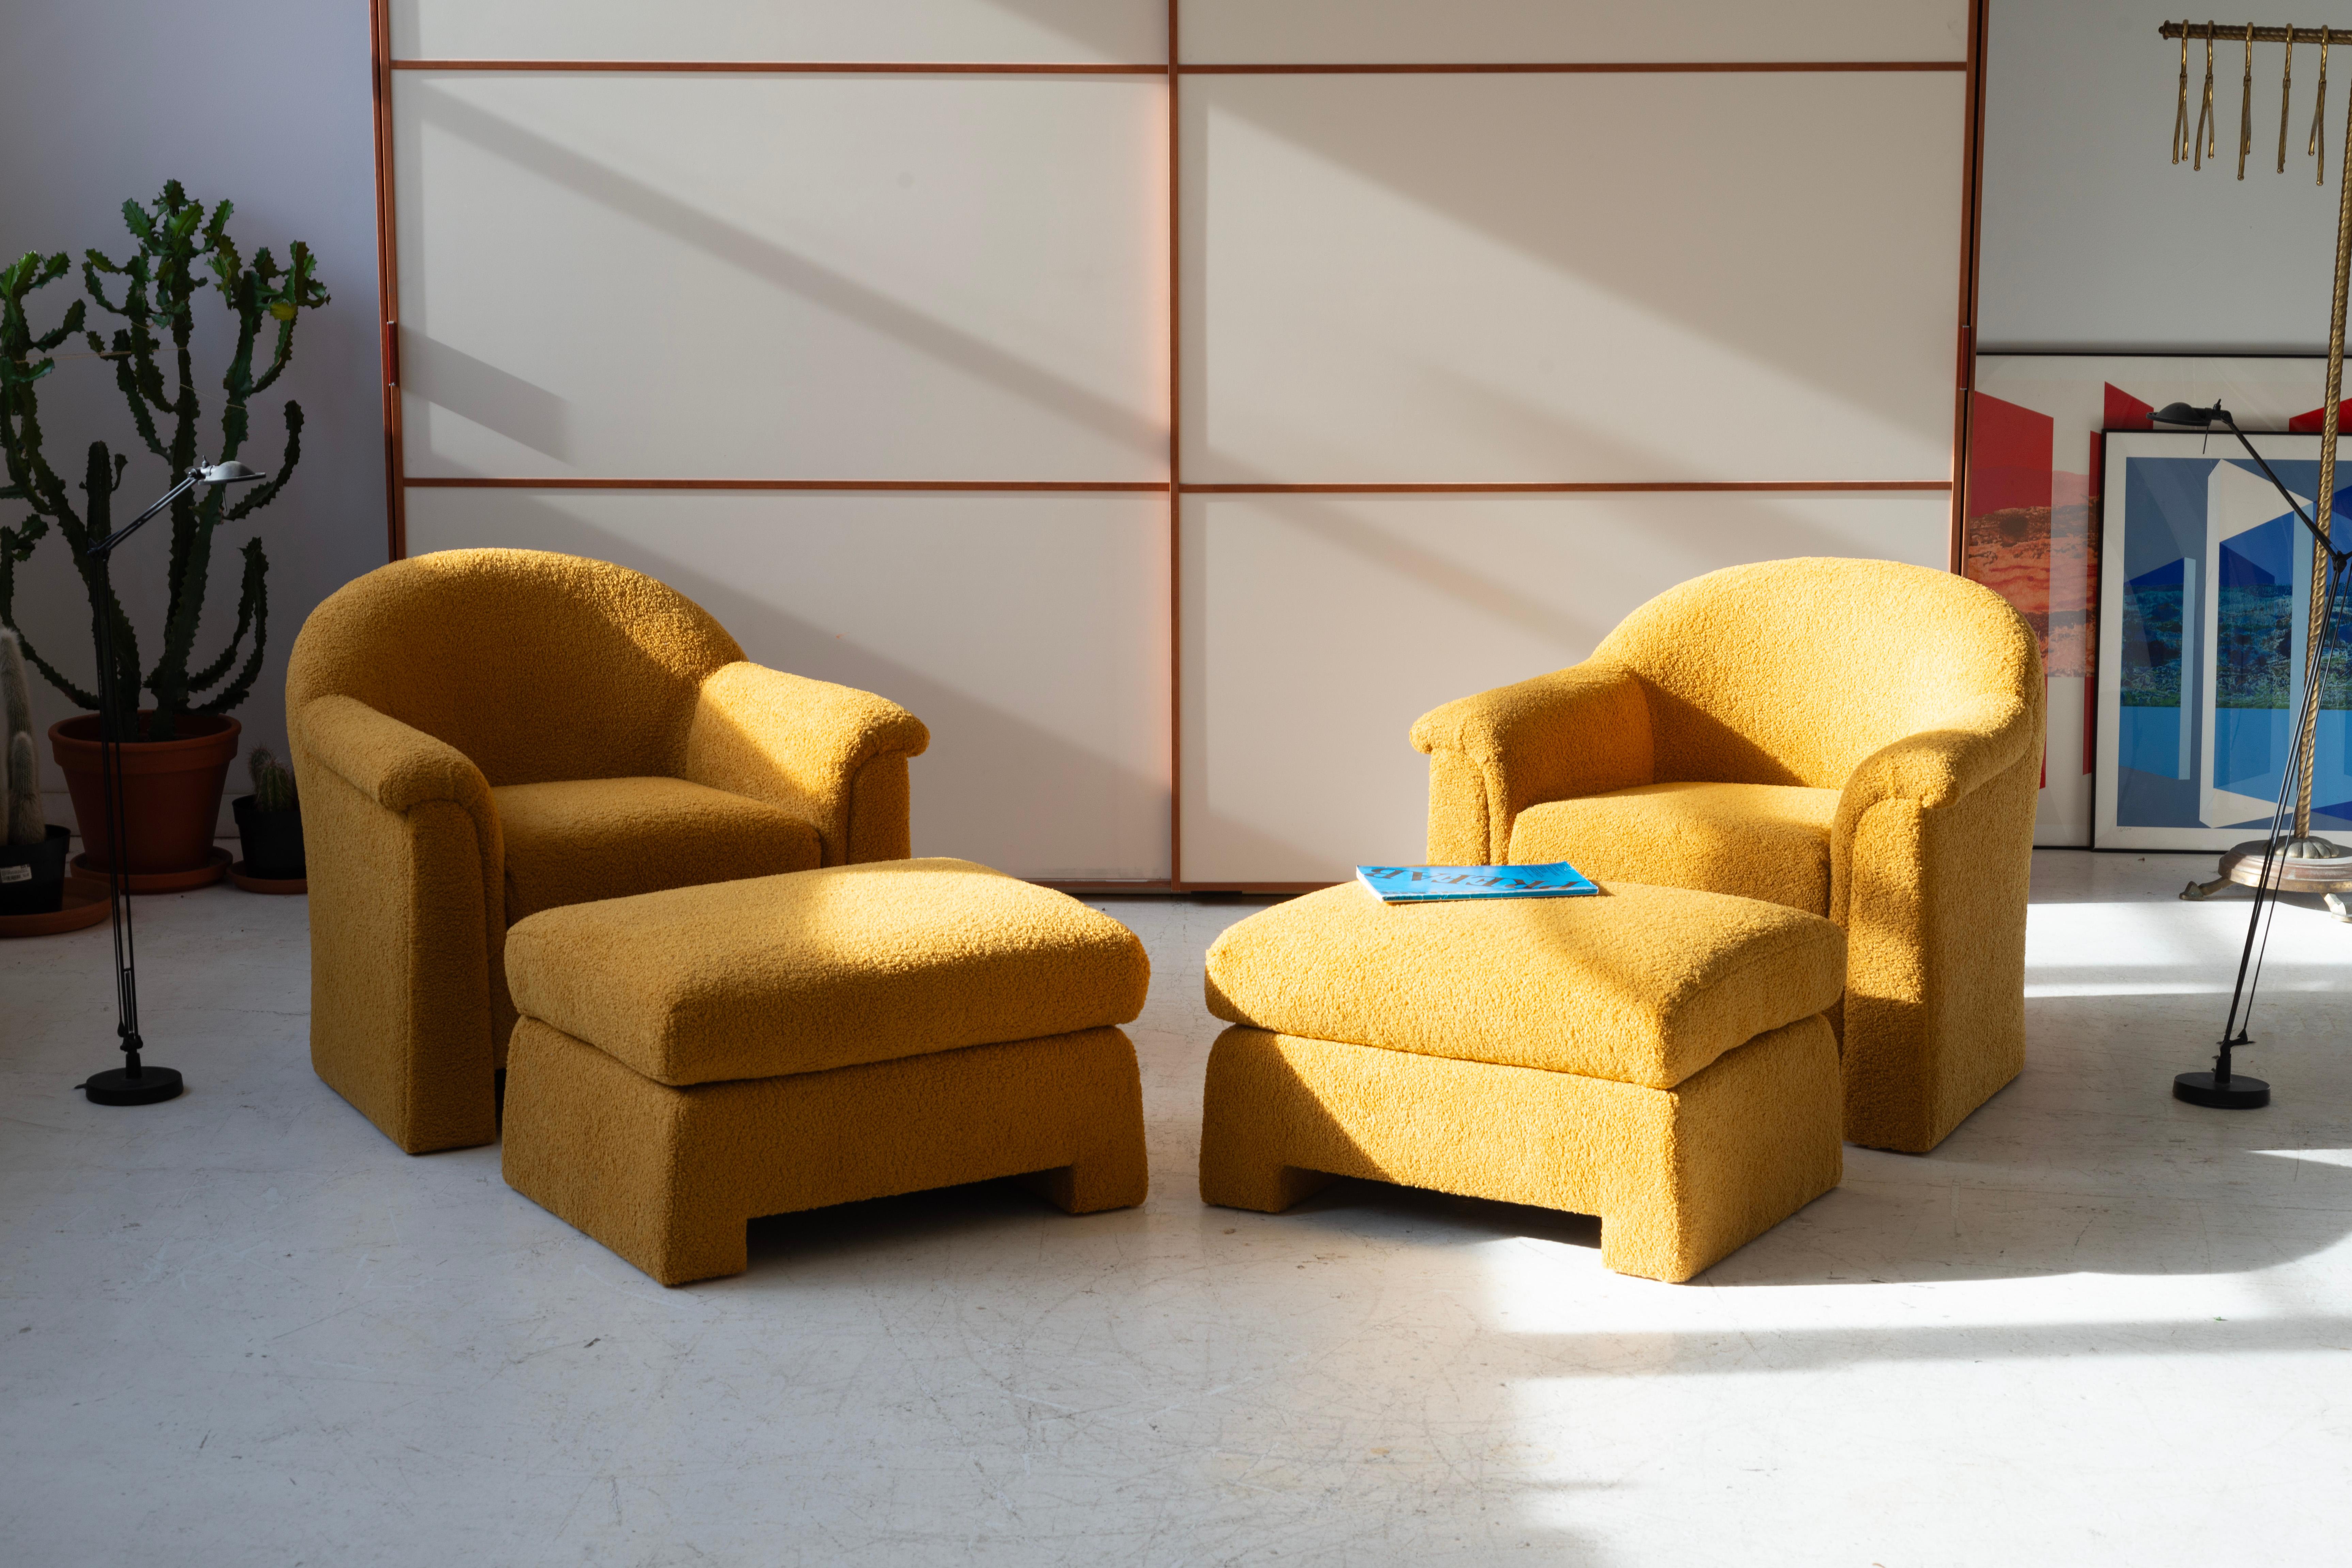 Ces chaises longues post-modernes et les ottomans assortis présentent un design épuré et minimaliste aux courbes douces, incarnant le style contemporain. Rembourrées en bouclette ocre de haute qualité, elles offrent un aspect chaleureux et texturé.